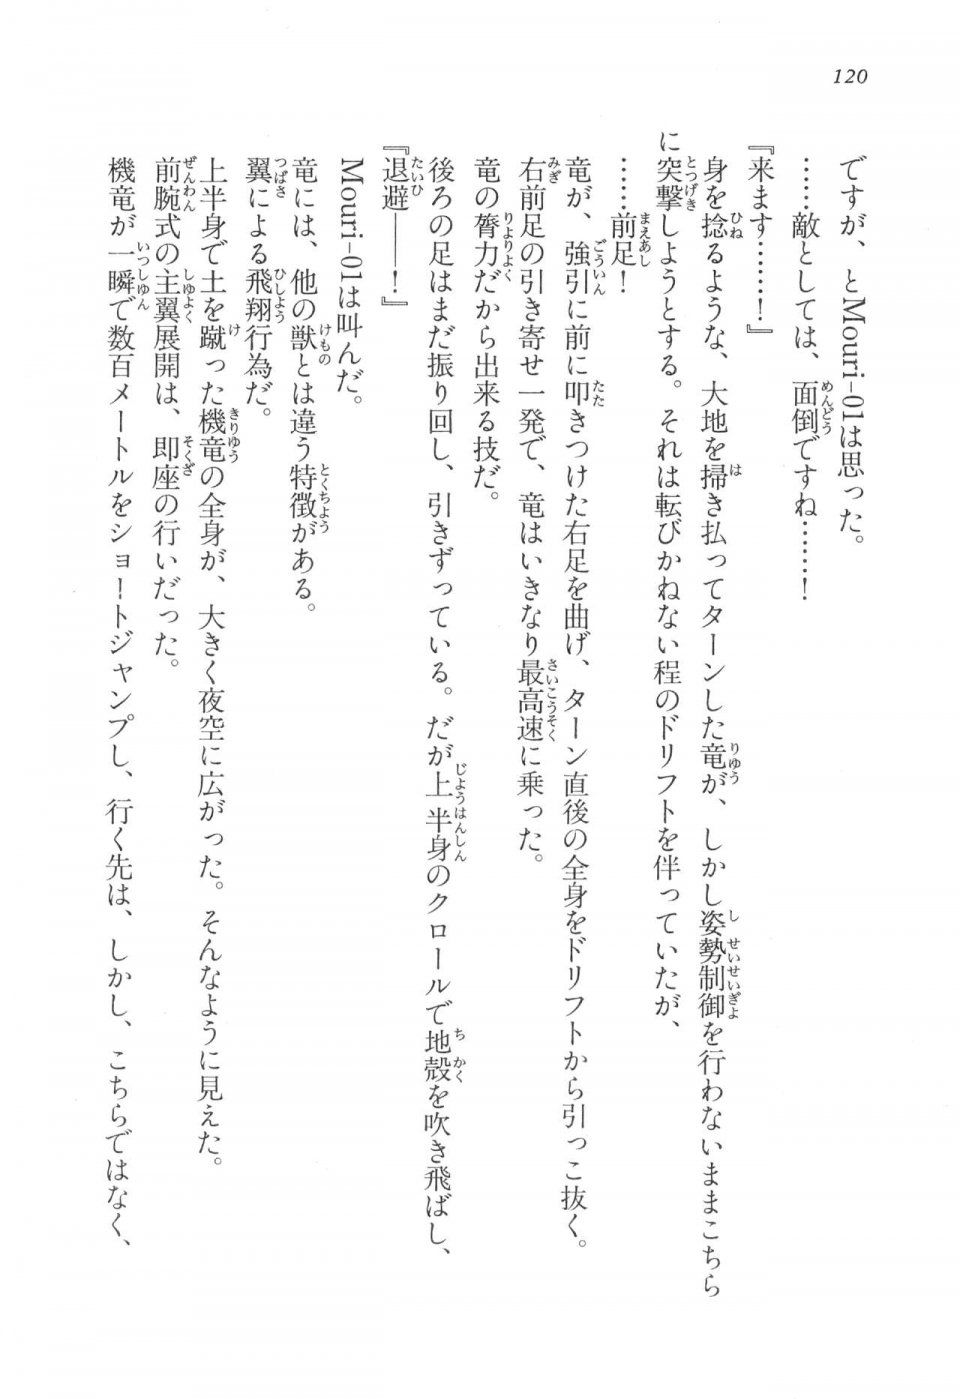 Kyoukai Senjou no Horizon LN Vol 17(7B) - Photo #120